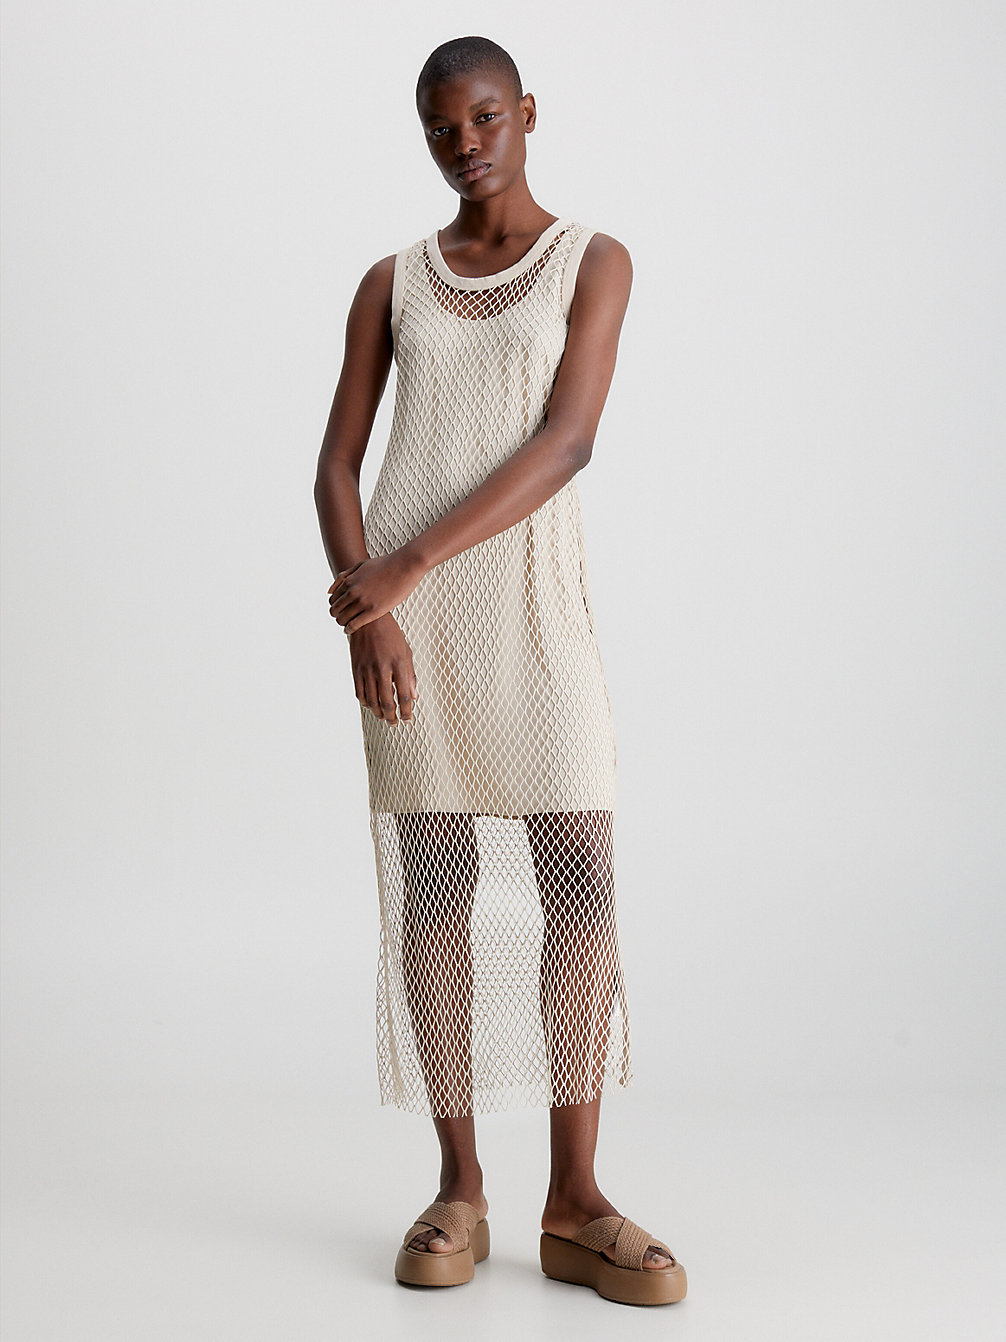 WHITE CLAY Layered Net Tank Dress undefined women Calvin Klein